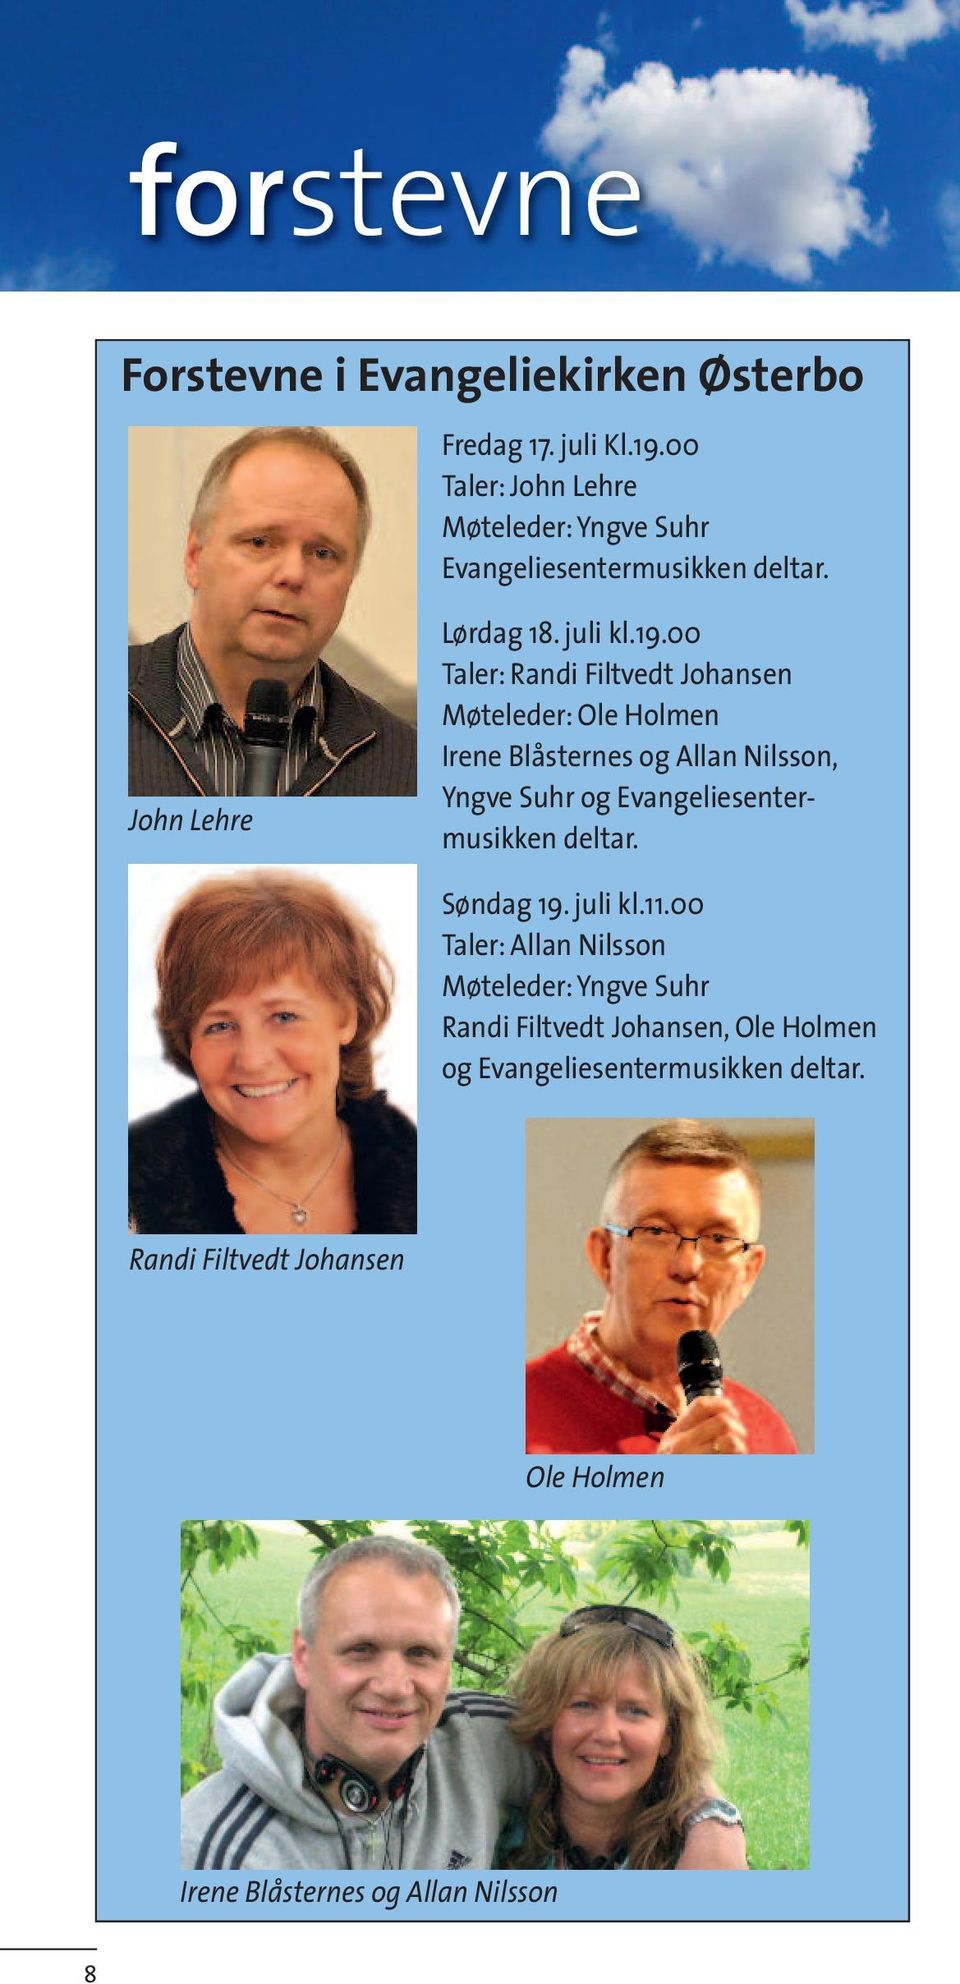 00 Taler: Randi Filtvedt Johansen Møteleder: Ole Holmen Irene Blåsternes og Allan Nilsson, Yngve Suhr og Evangeliesentermusikken